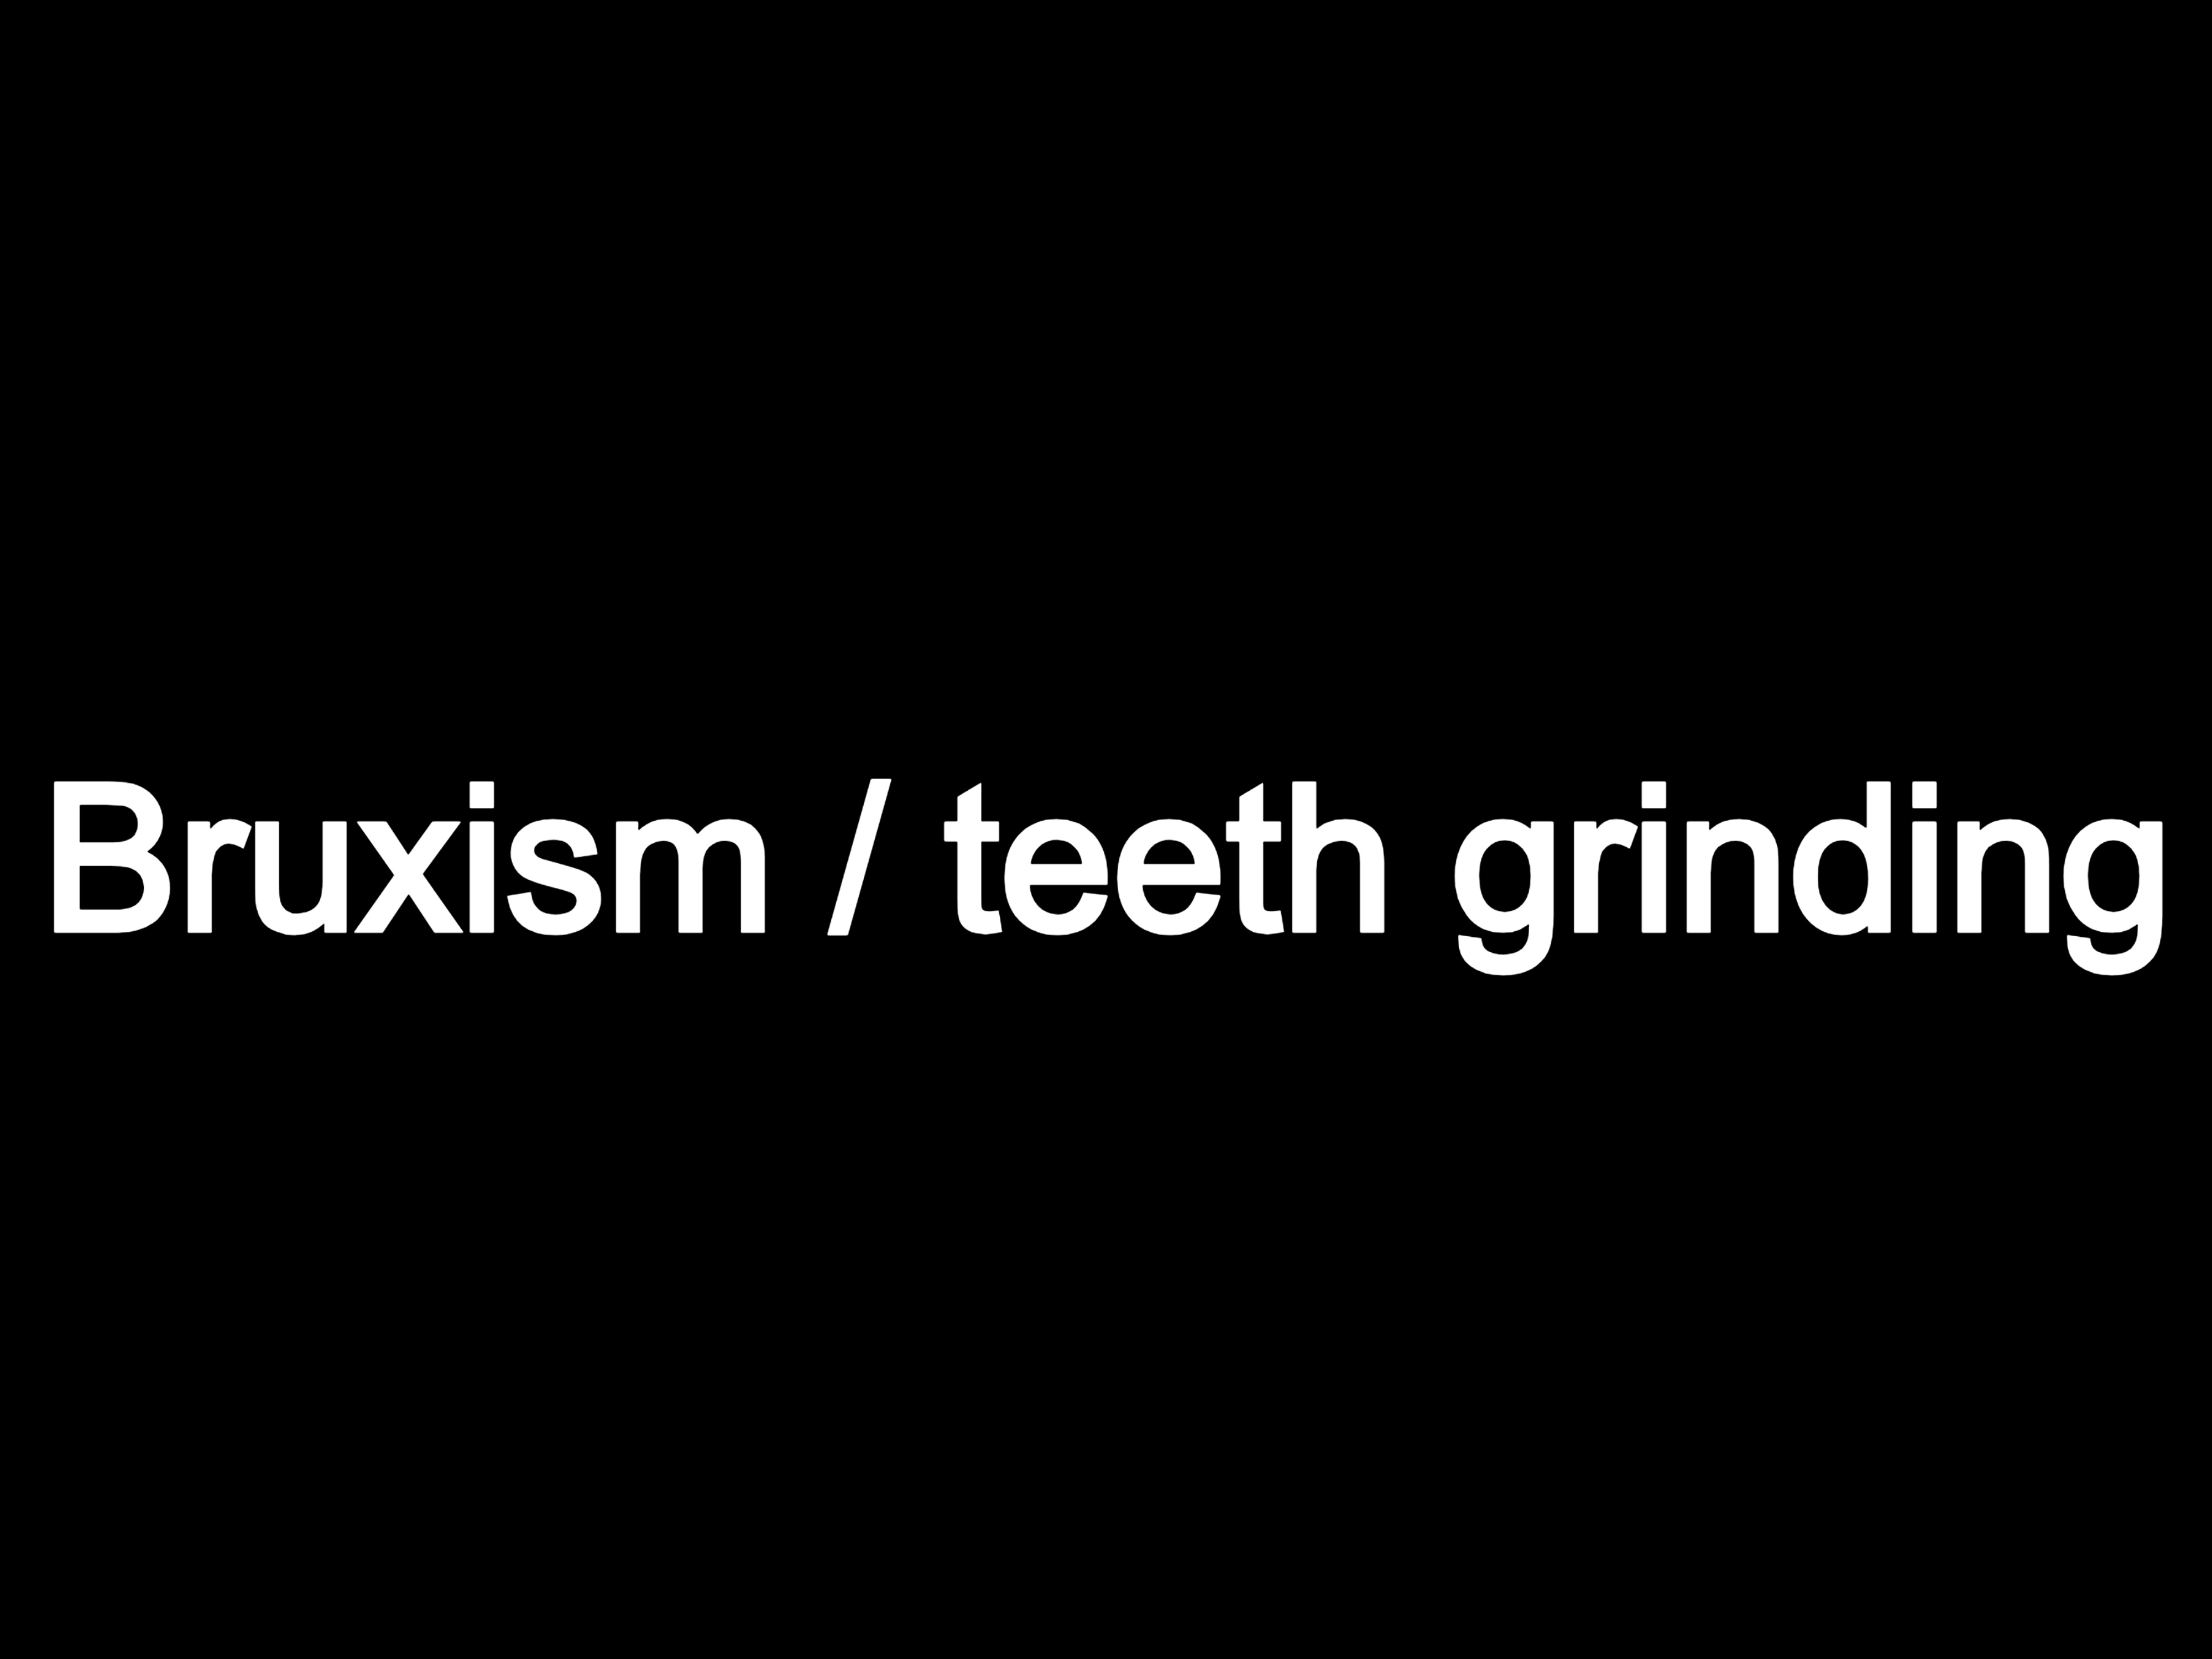 Bruxism or teeth grinding